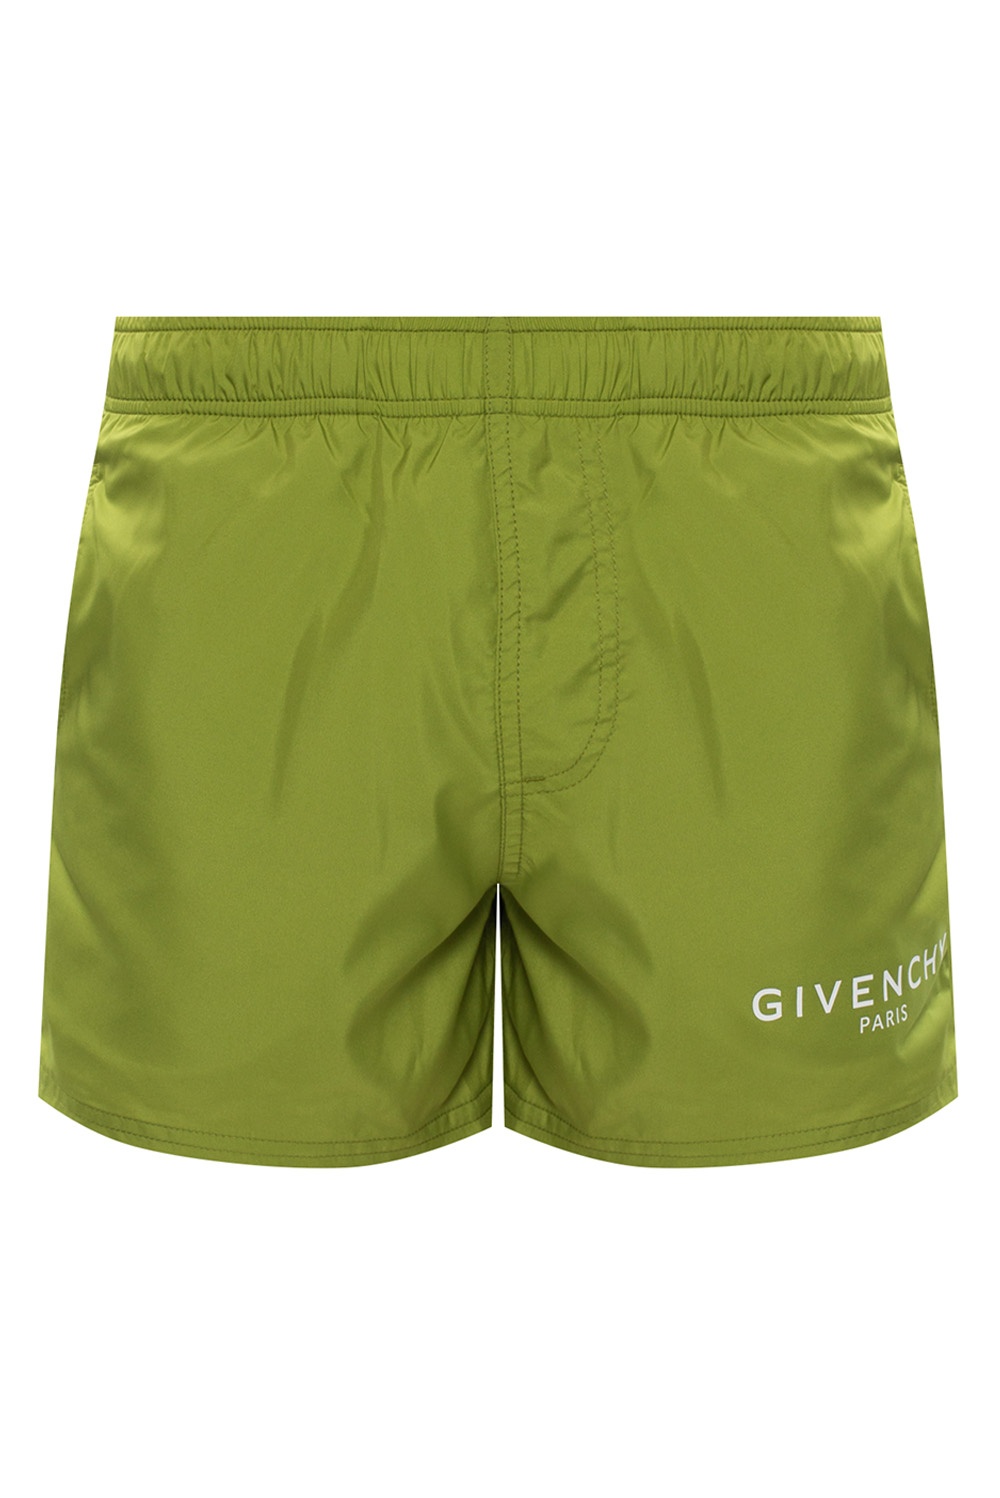 Green Swim shorts with logo Givenchy - Vitkac Italy